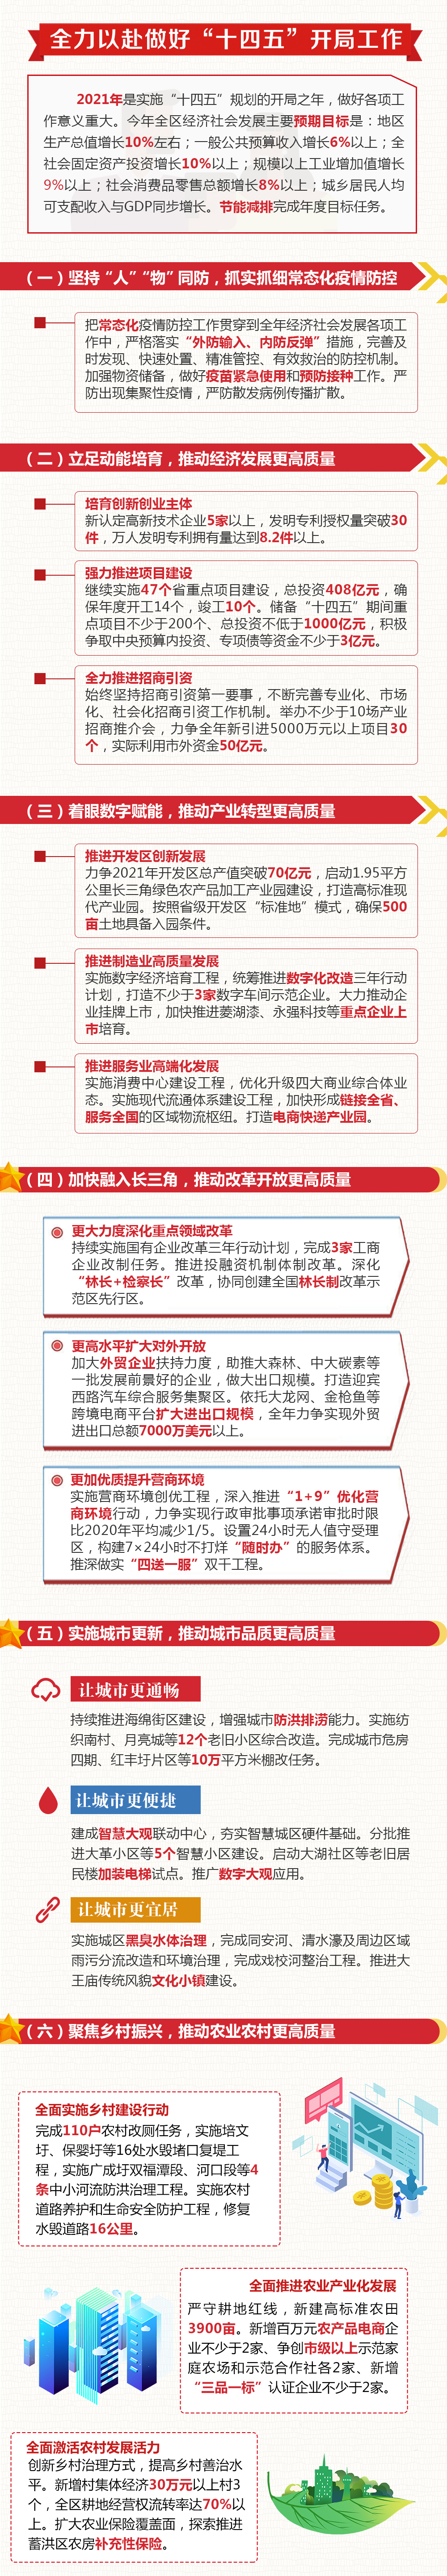 一图看懂安庆大观区政府工作报告